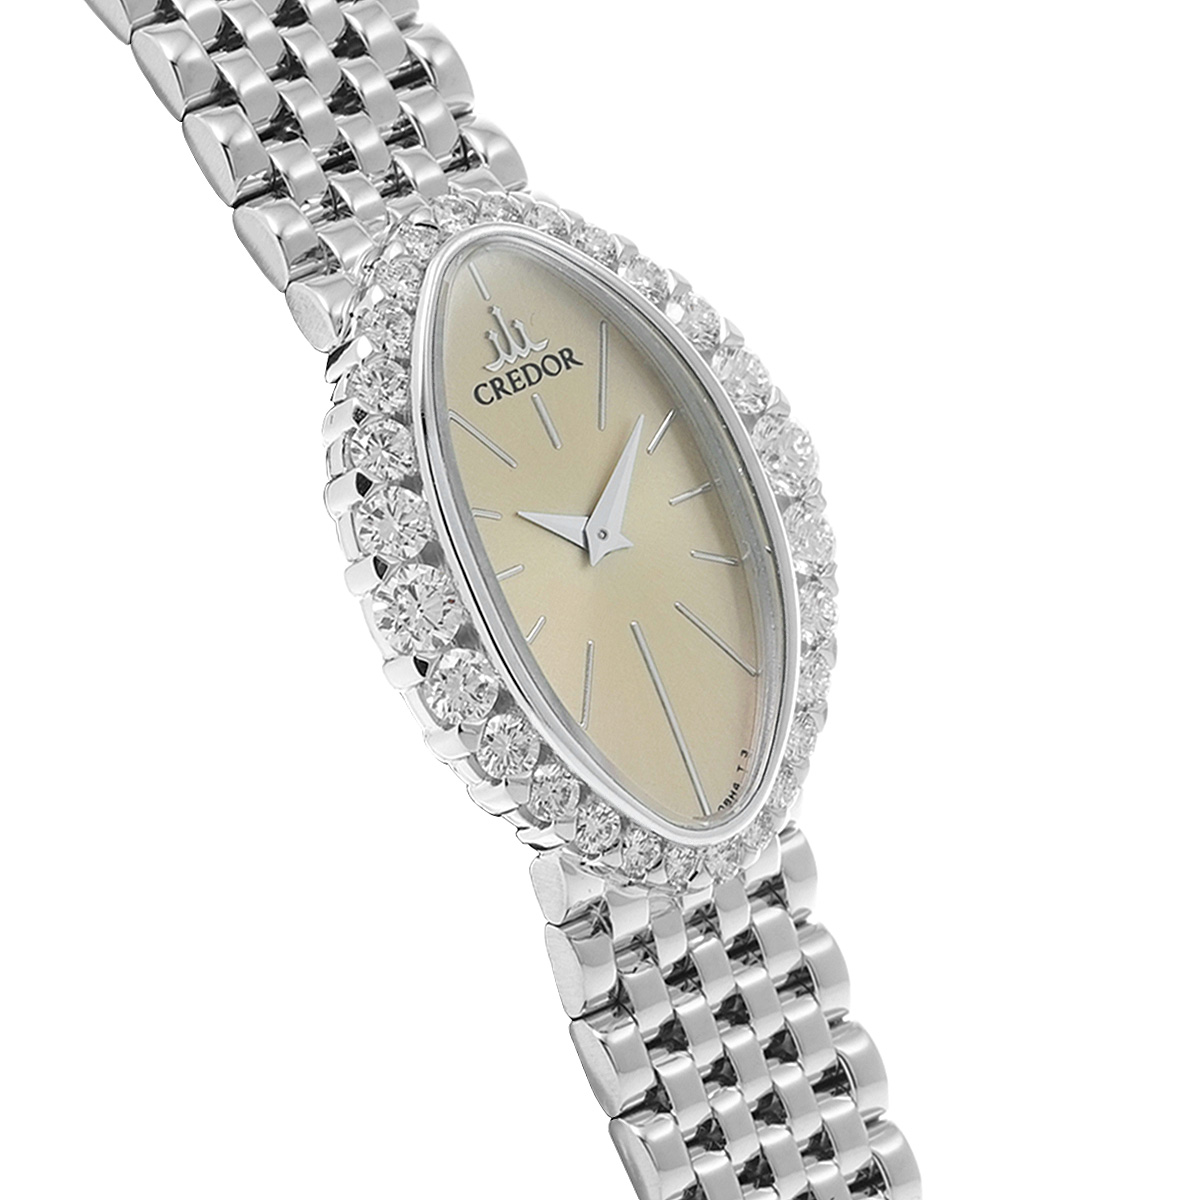 セイコー SEIKO セイコークレドール CREDOR クオーツ 9330-5330 薄型 可動中 - ブランド腕時計